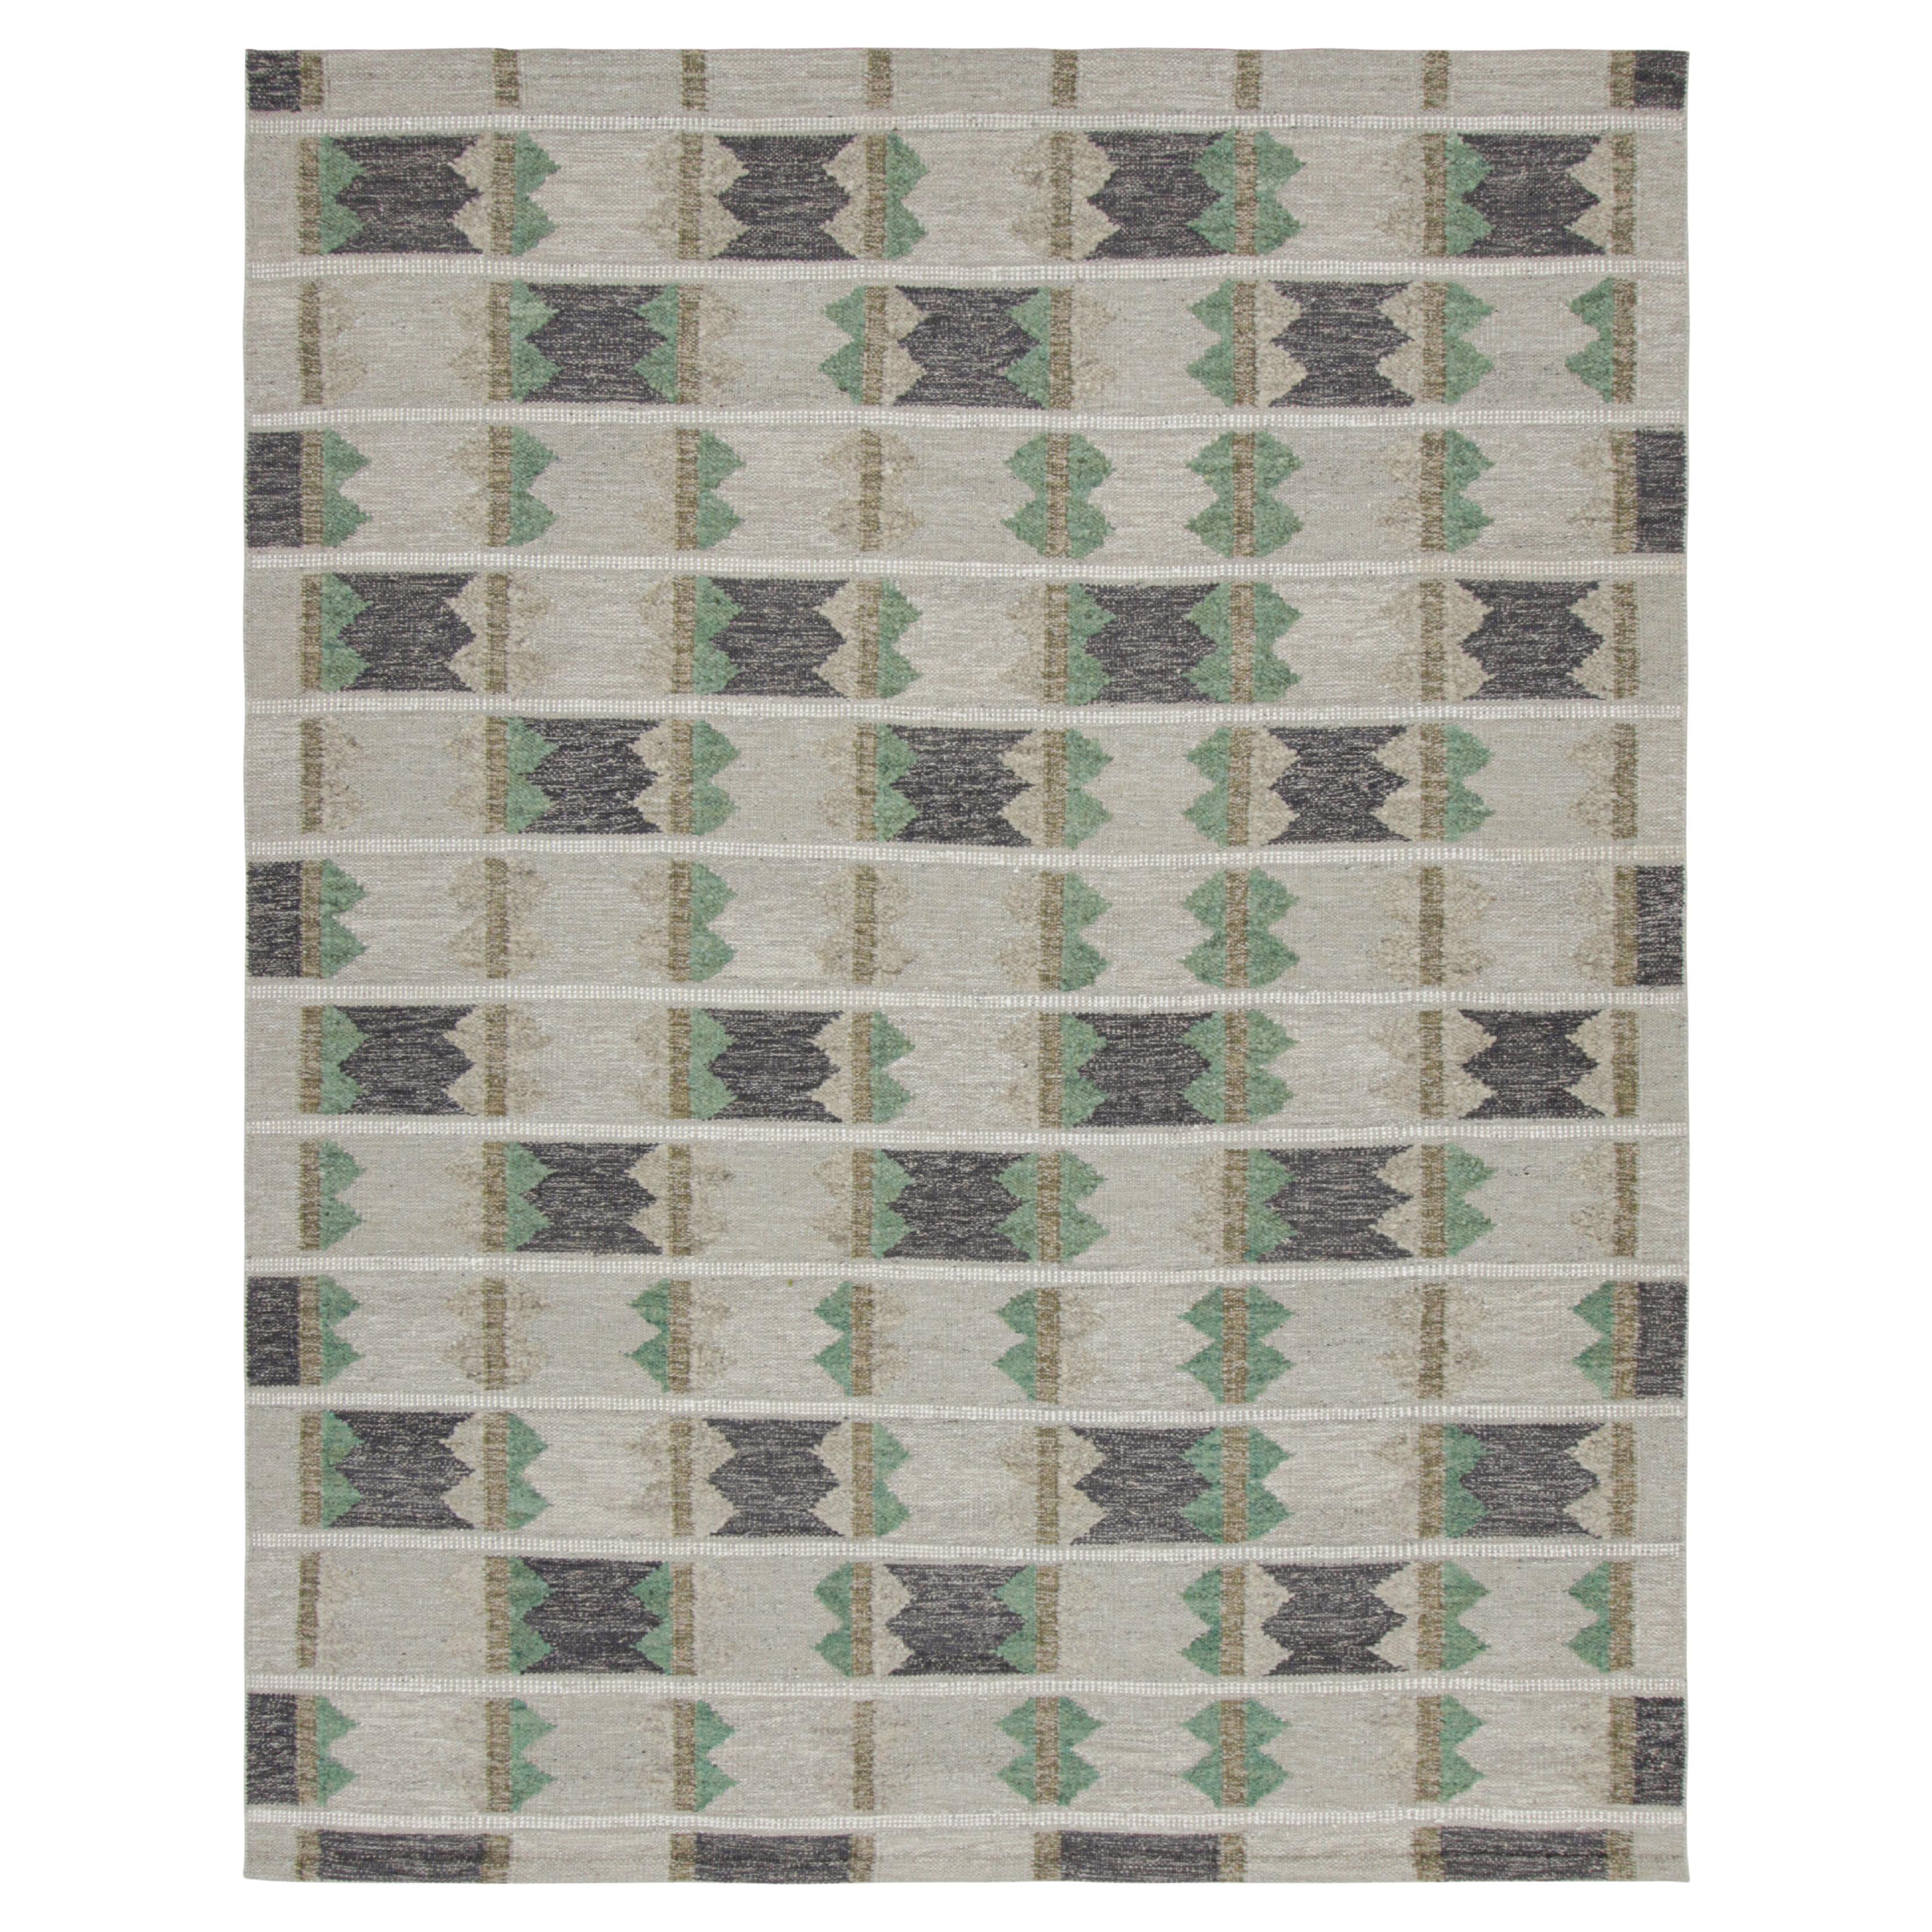 Rug & Kilim's Teppich im skandinavischen Stil mit geometrischen Mustern in Grüntönen